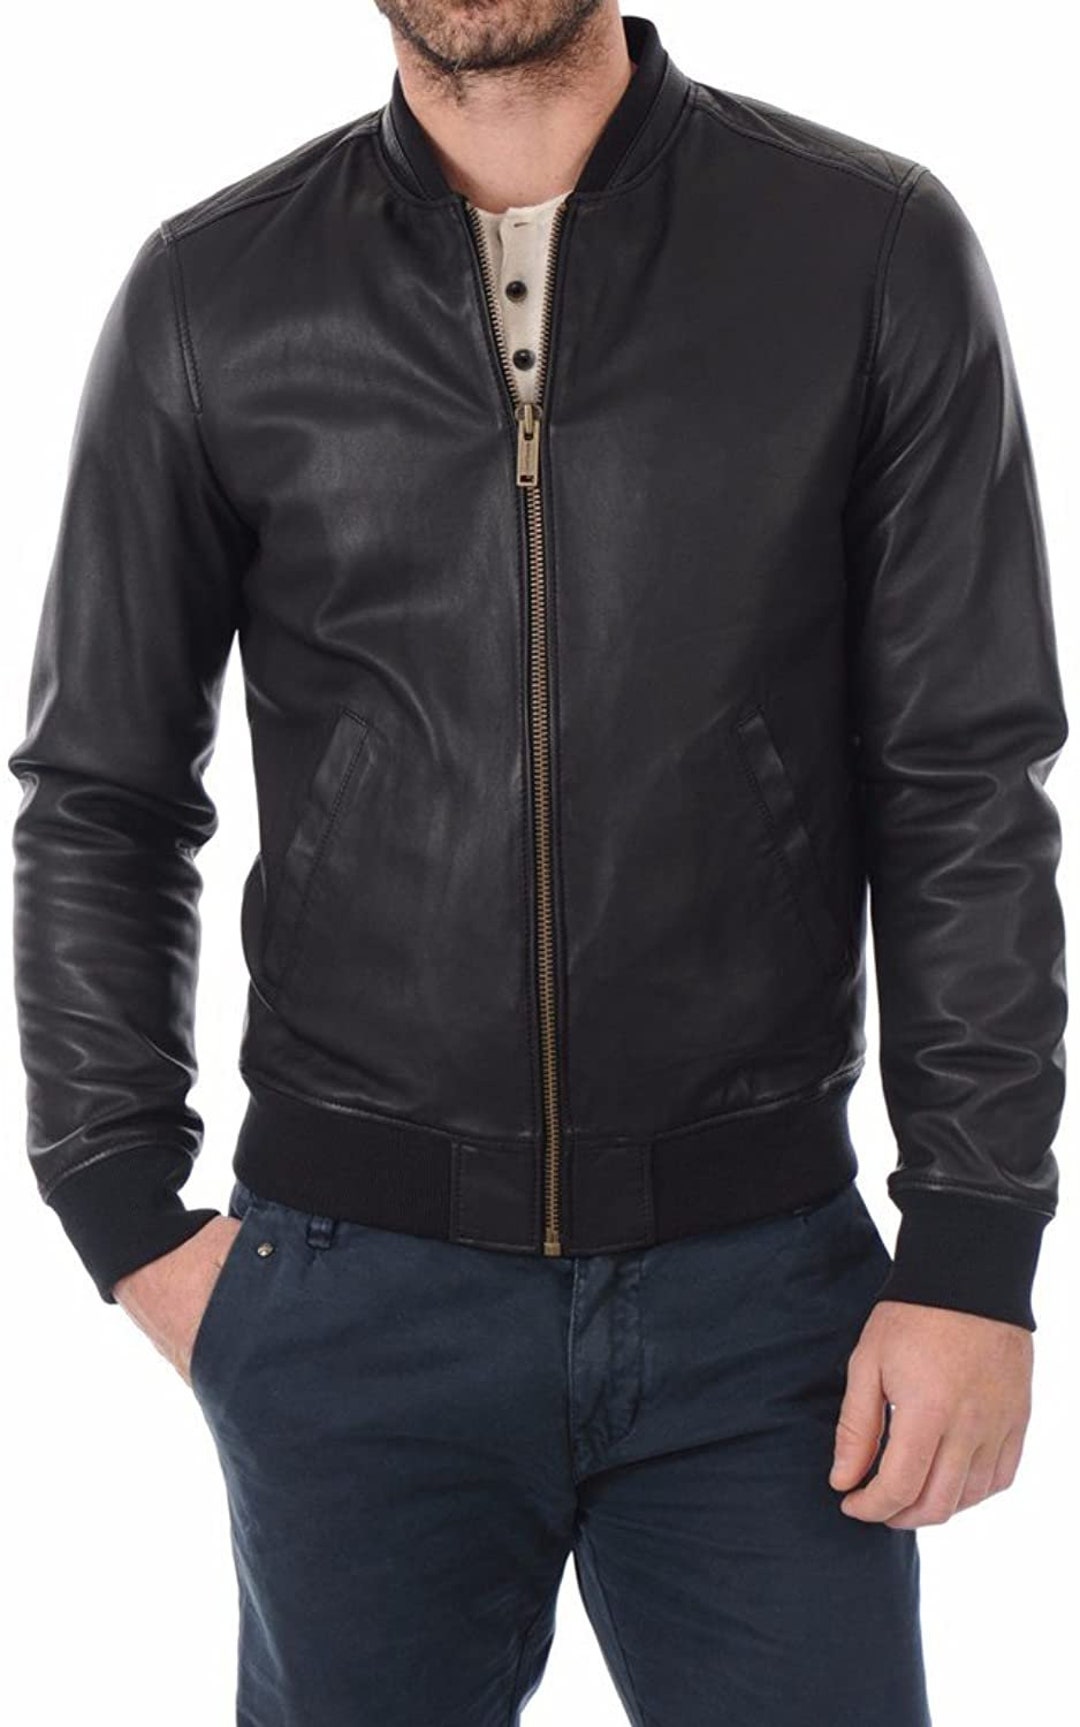 Men Biker Leather Jacket Hand Made Black Leather Jacket Slim - Etsy